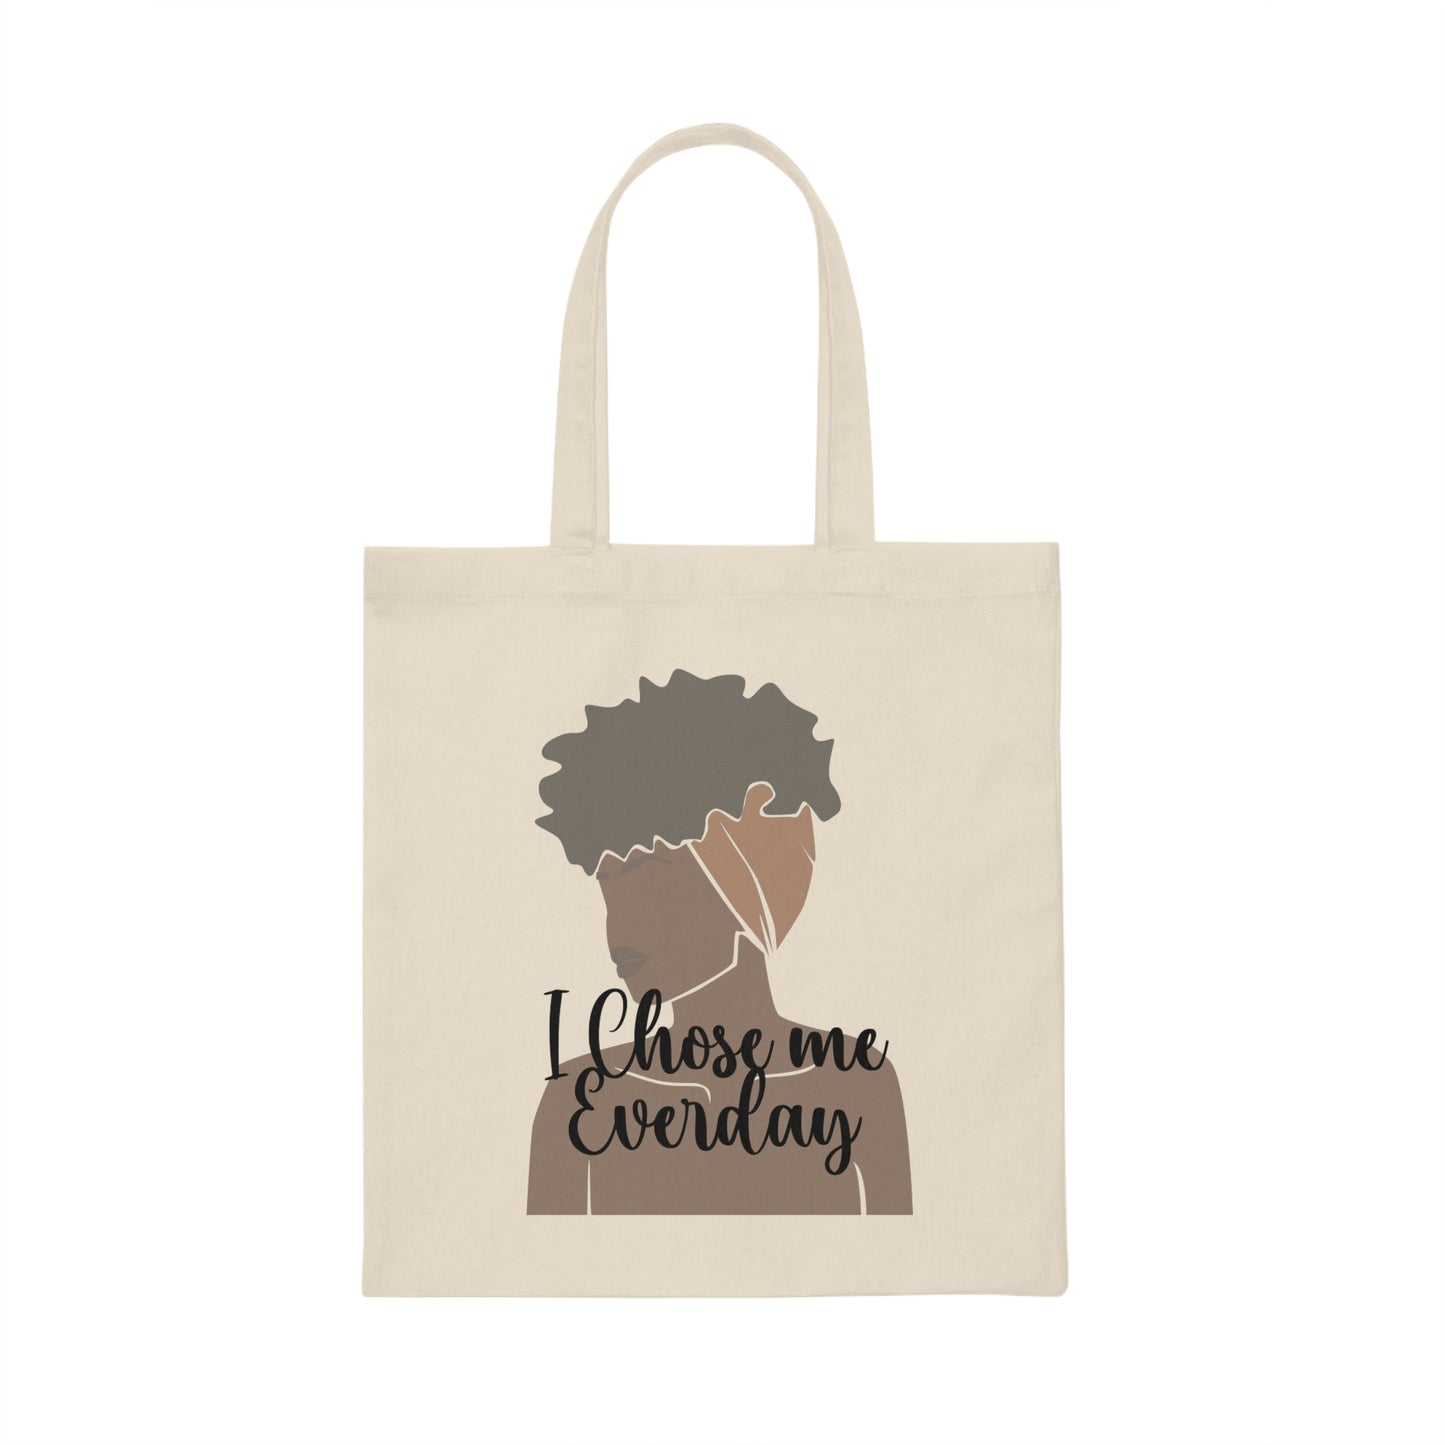 I Chose Me Everday Canvas Tote Bag-Tote Bag for Black Women-Shoulder Bag-Affirmation Tote Bag